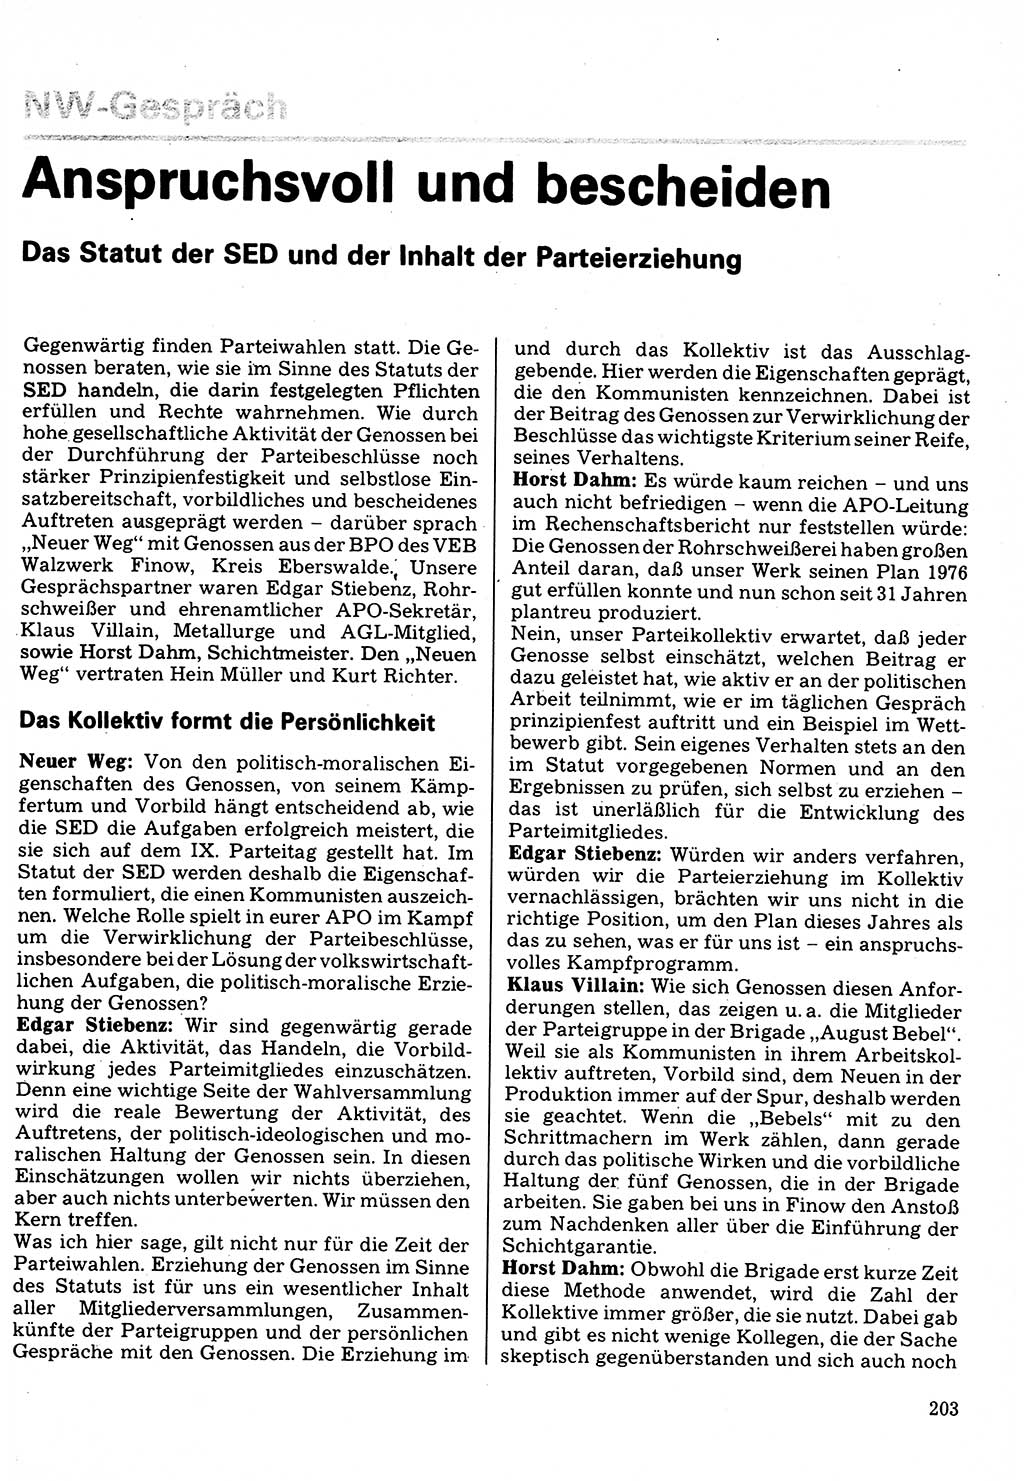 Neuer Weg (NW), Organ des Zentralkomitees (ZK) der SED (Sozialistische Einheitspartei Deutschlands) für Fragen des Parteilebens, 32. Jahrgang [Deutsche Demokratische Republik (DDR)] 1977, Seite 203 (NW ZK SED DDR 1977, S. 203)